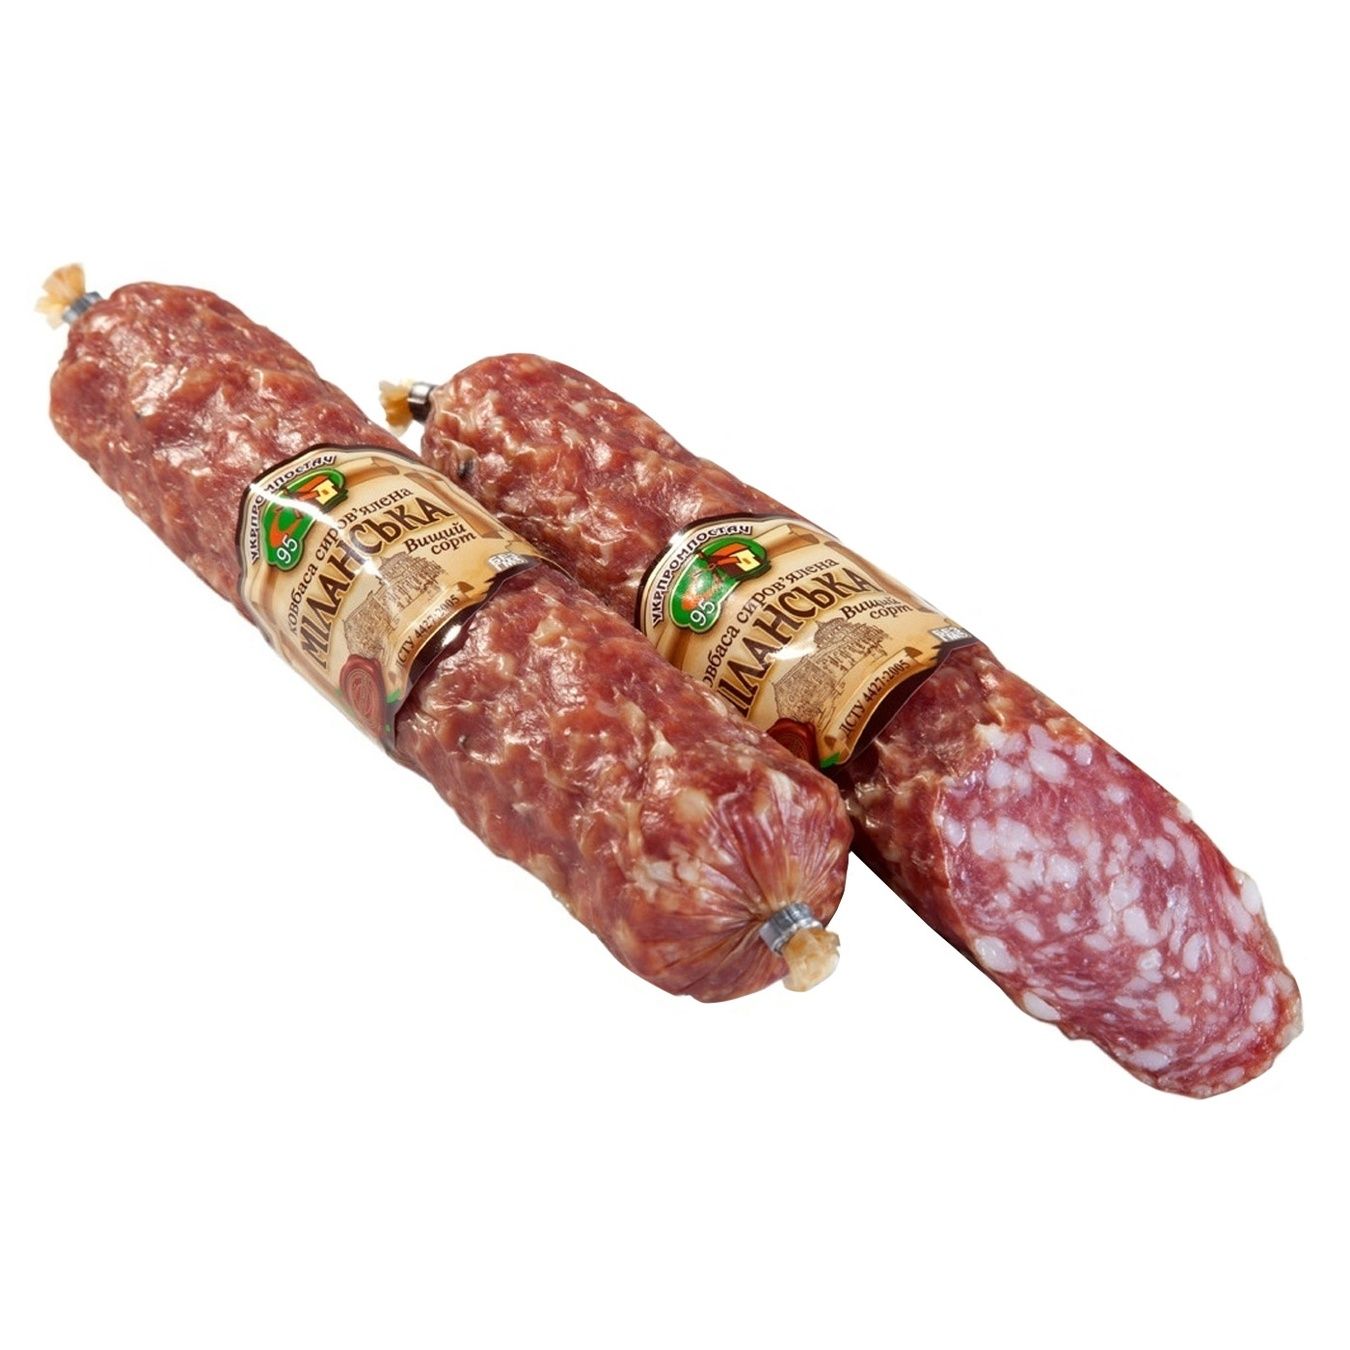 Sausage Ukrprompostach Milanese cured 